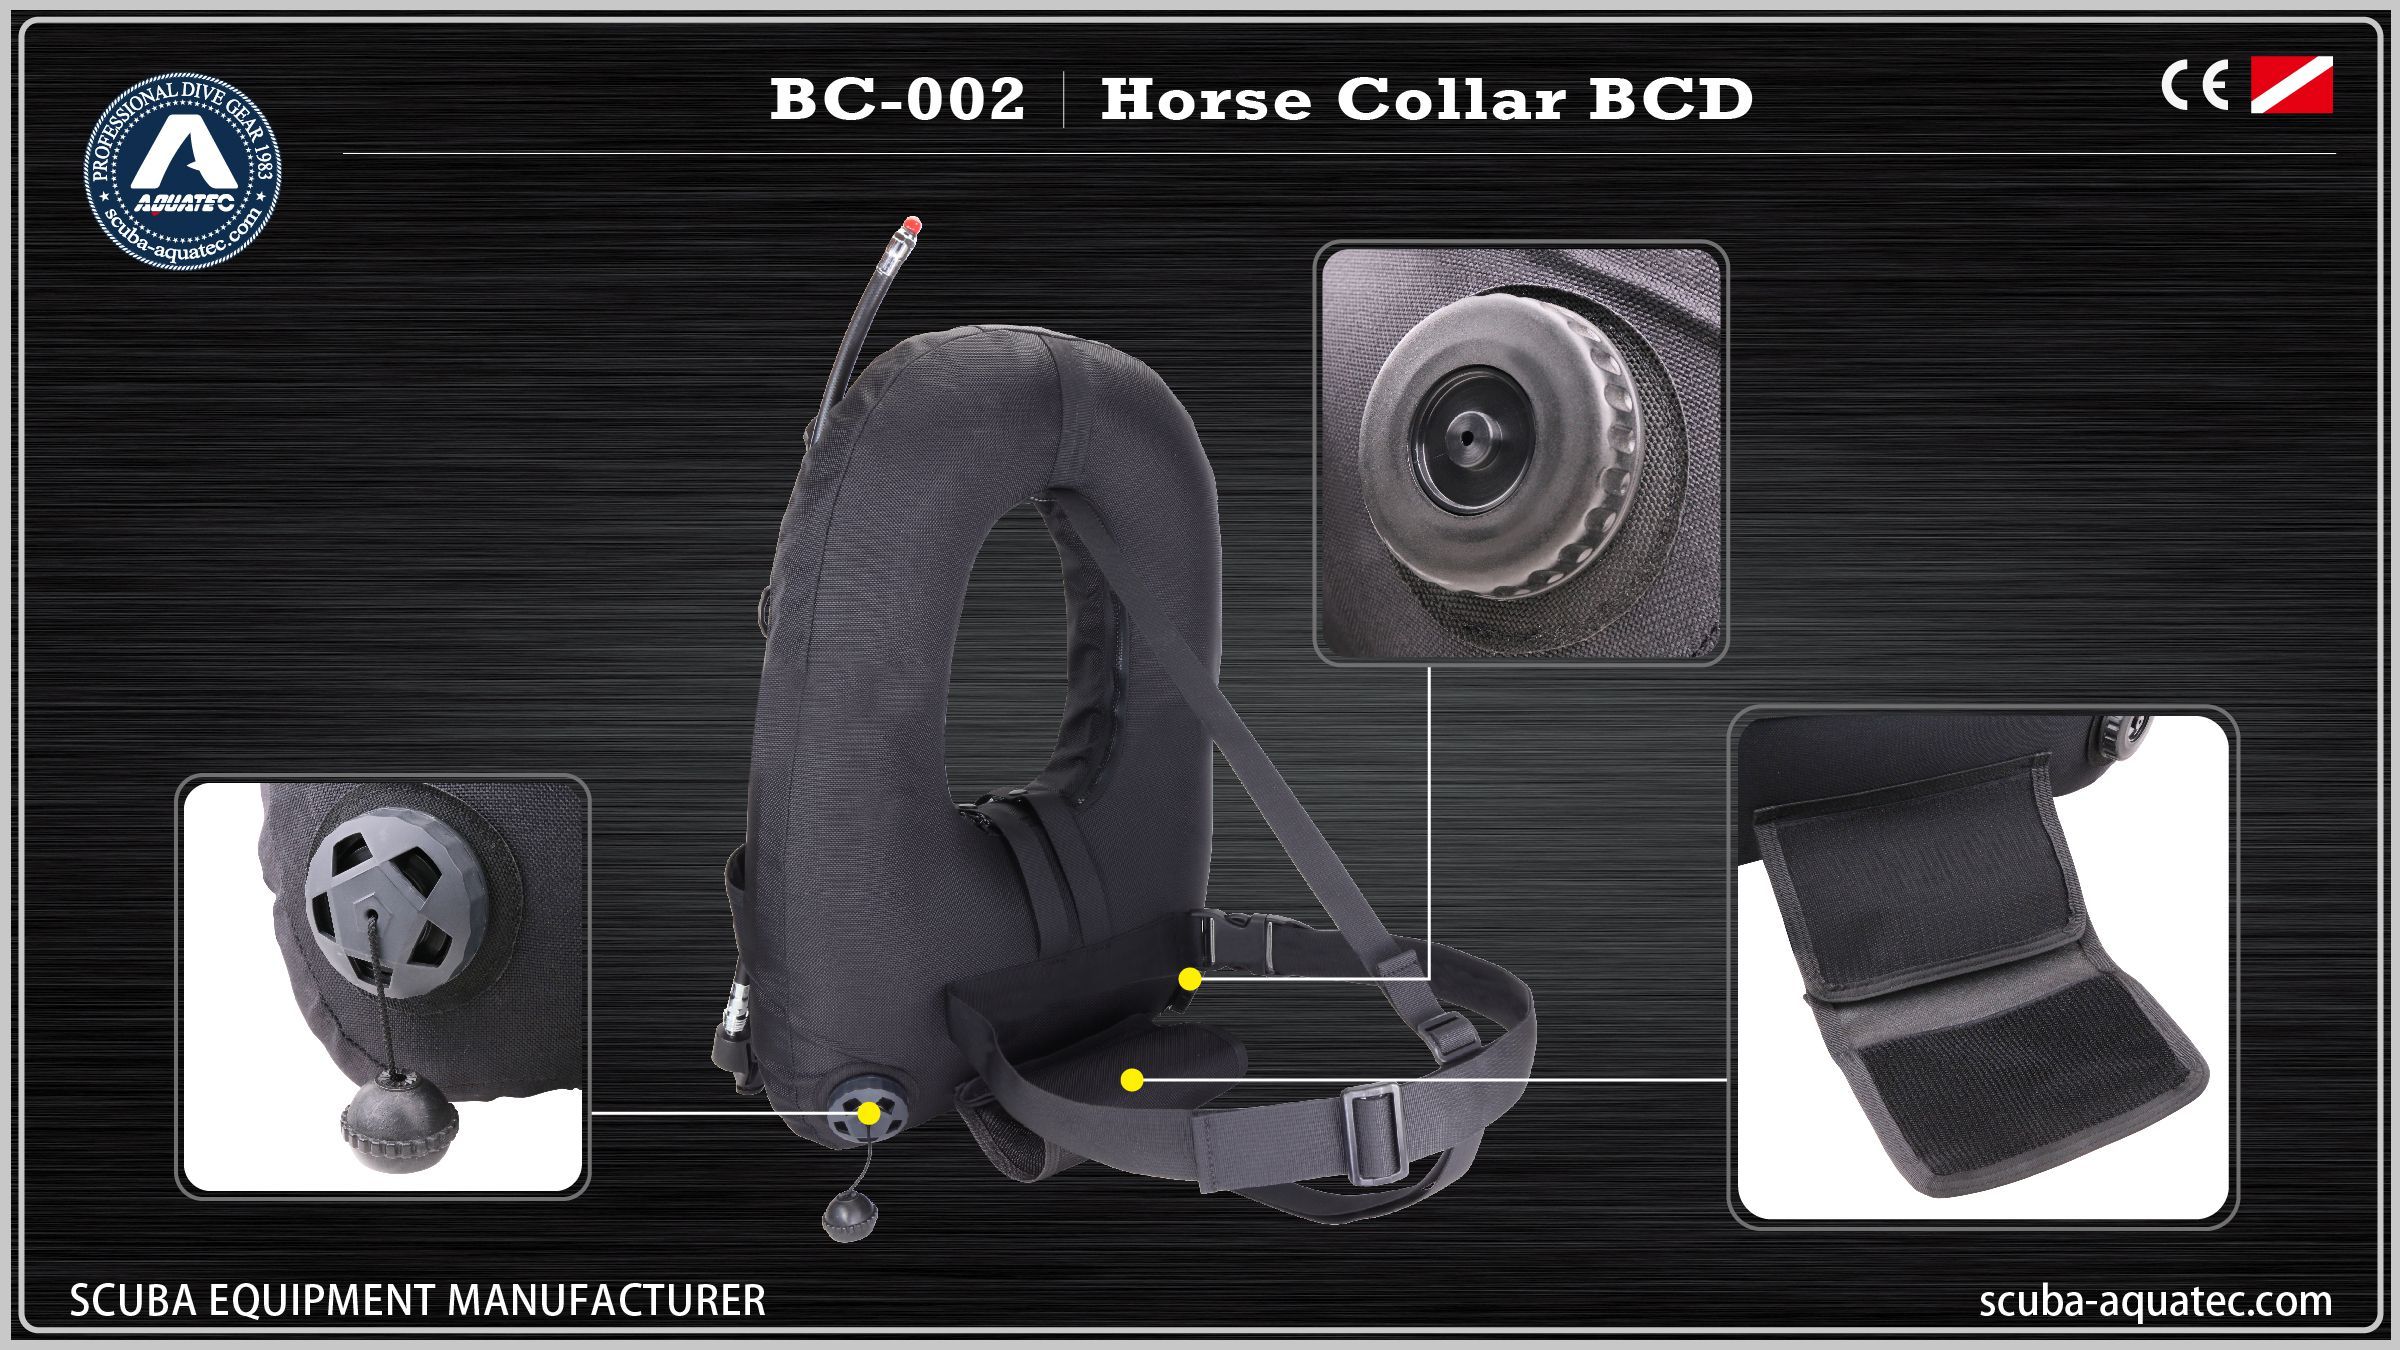 Chaleco de collar de caballo para buceo BCD